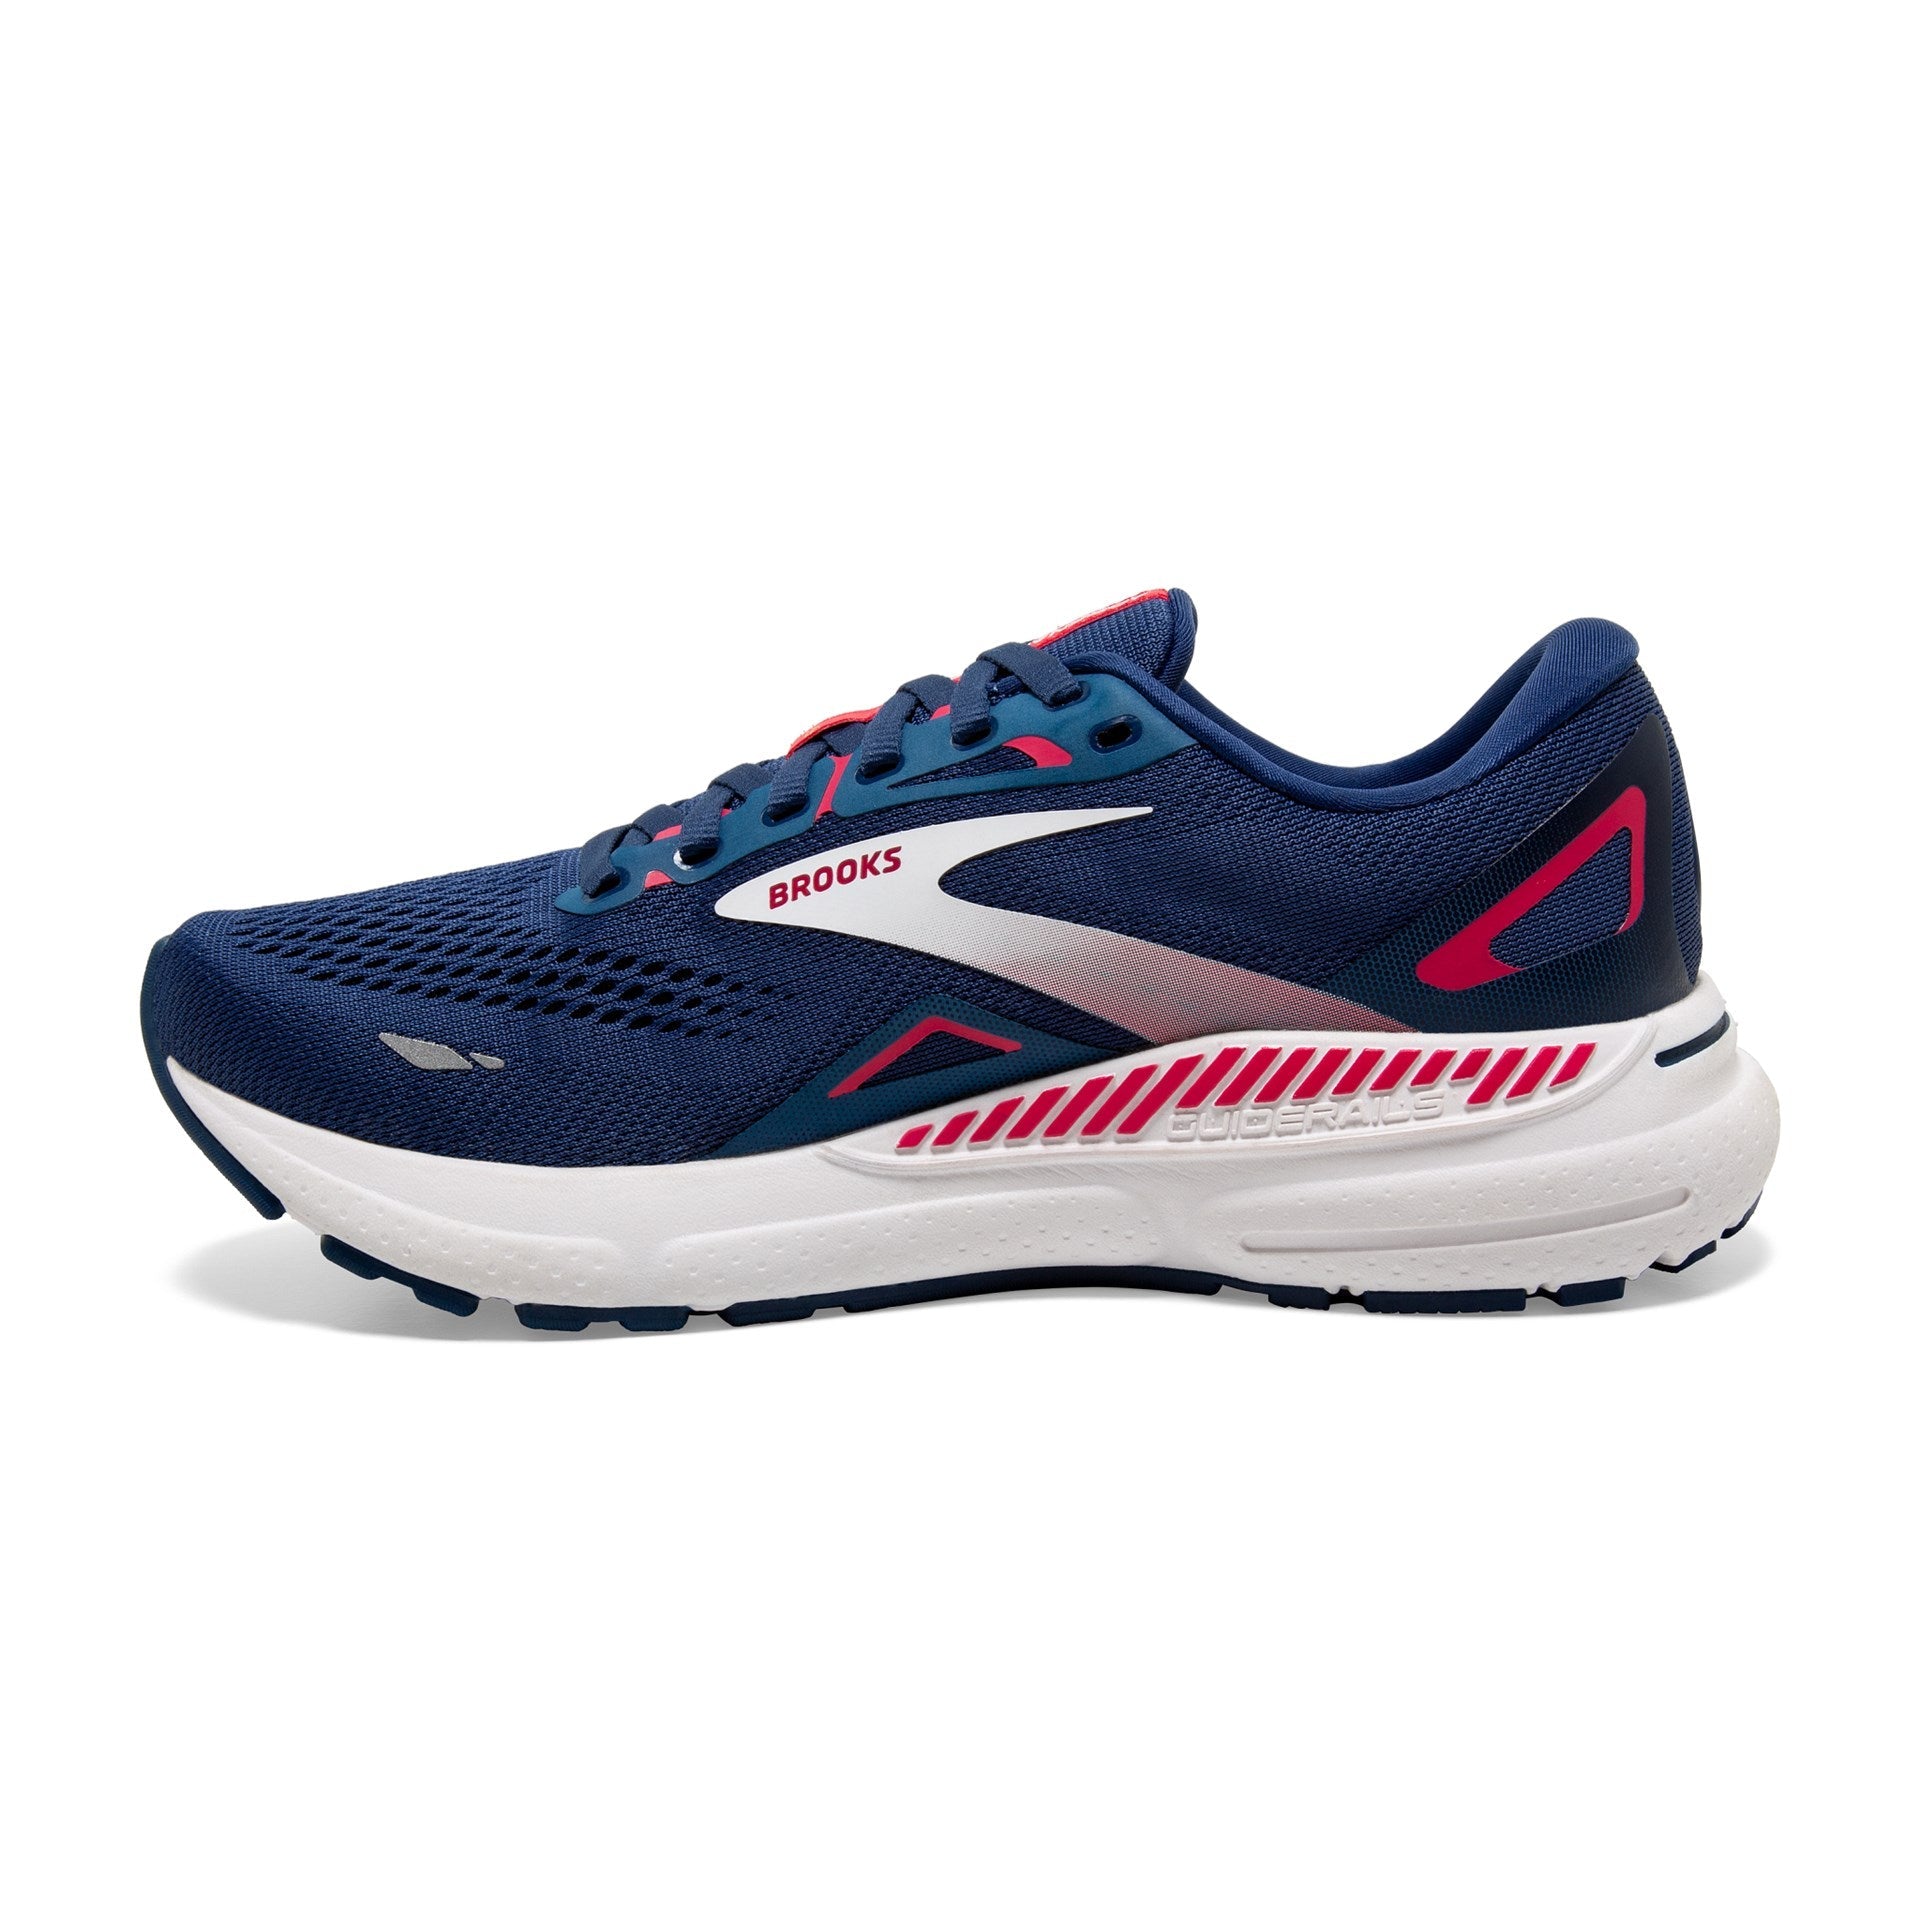 Brooks Adrenaline GTS 23 Running Shoes - Womens - Blue/Raspberry/White